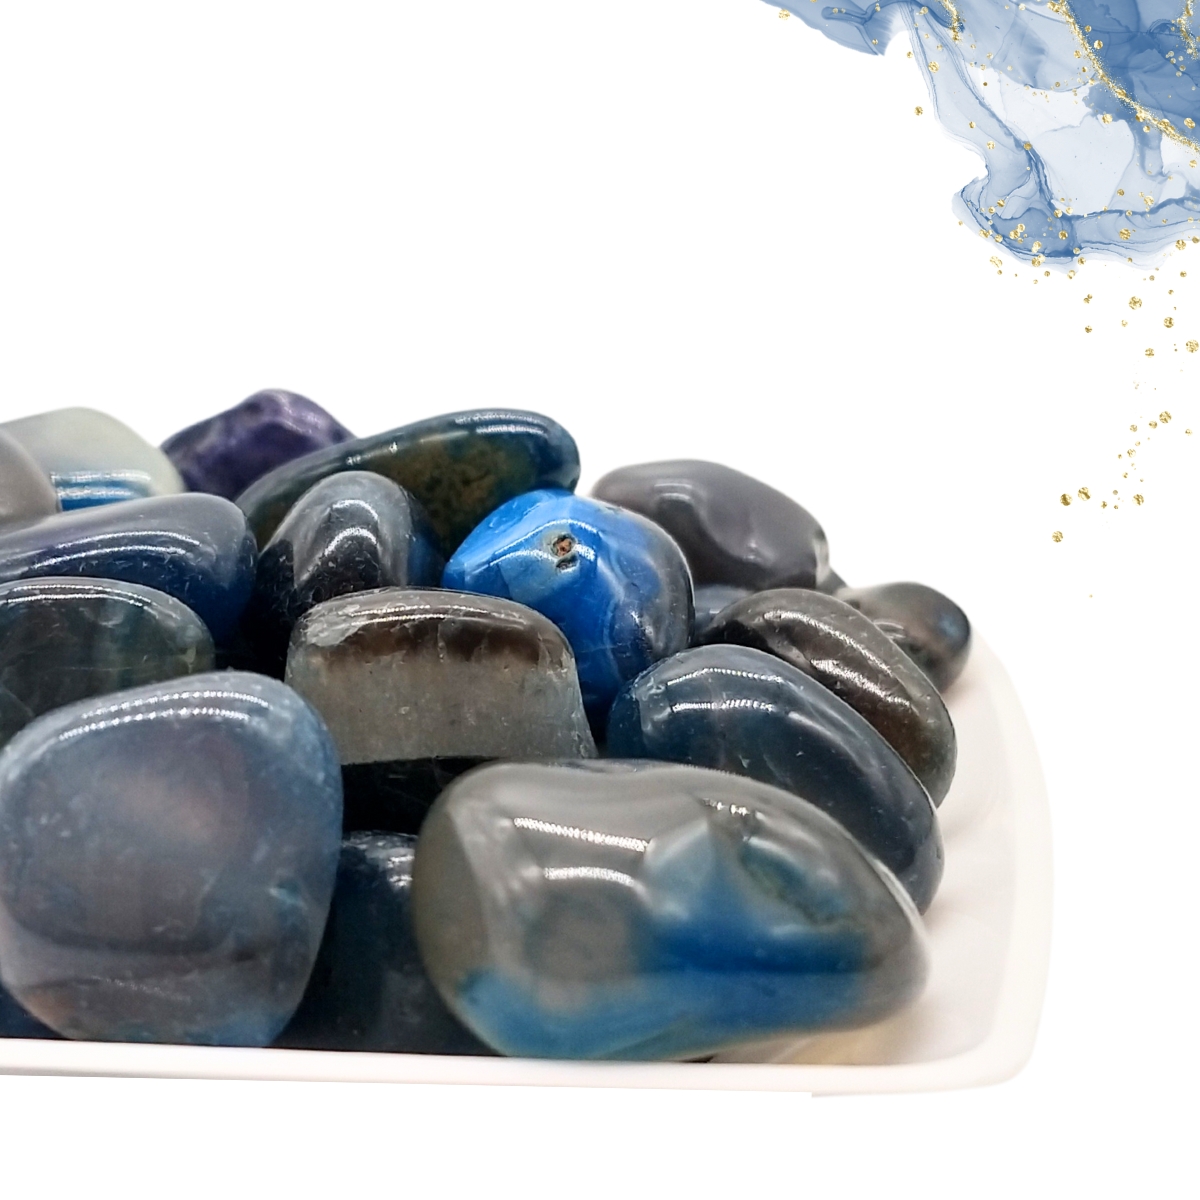 Brinco de Pedra Ágata Azul - Argola dupla - Encanto das Pedras sbc